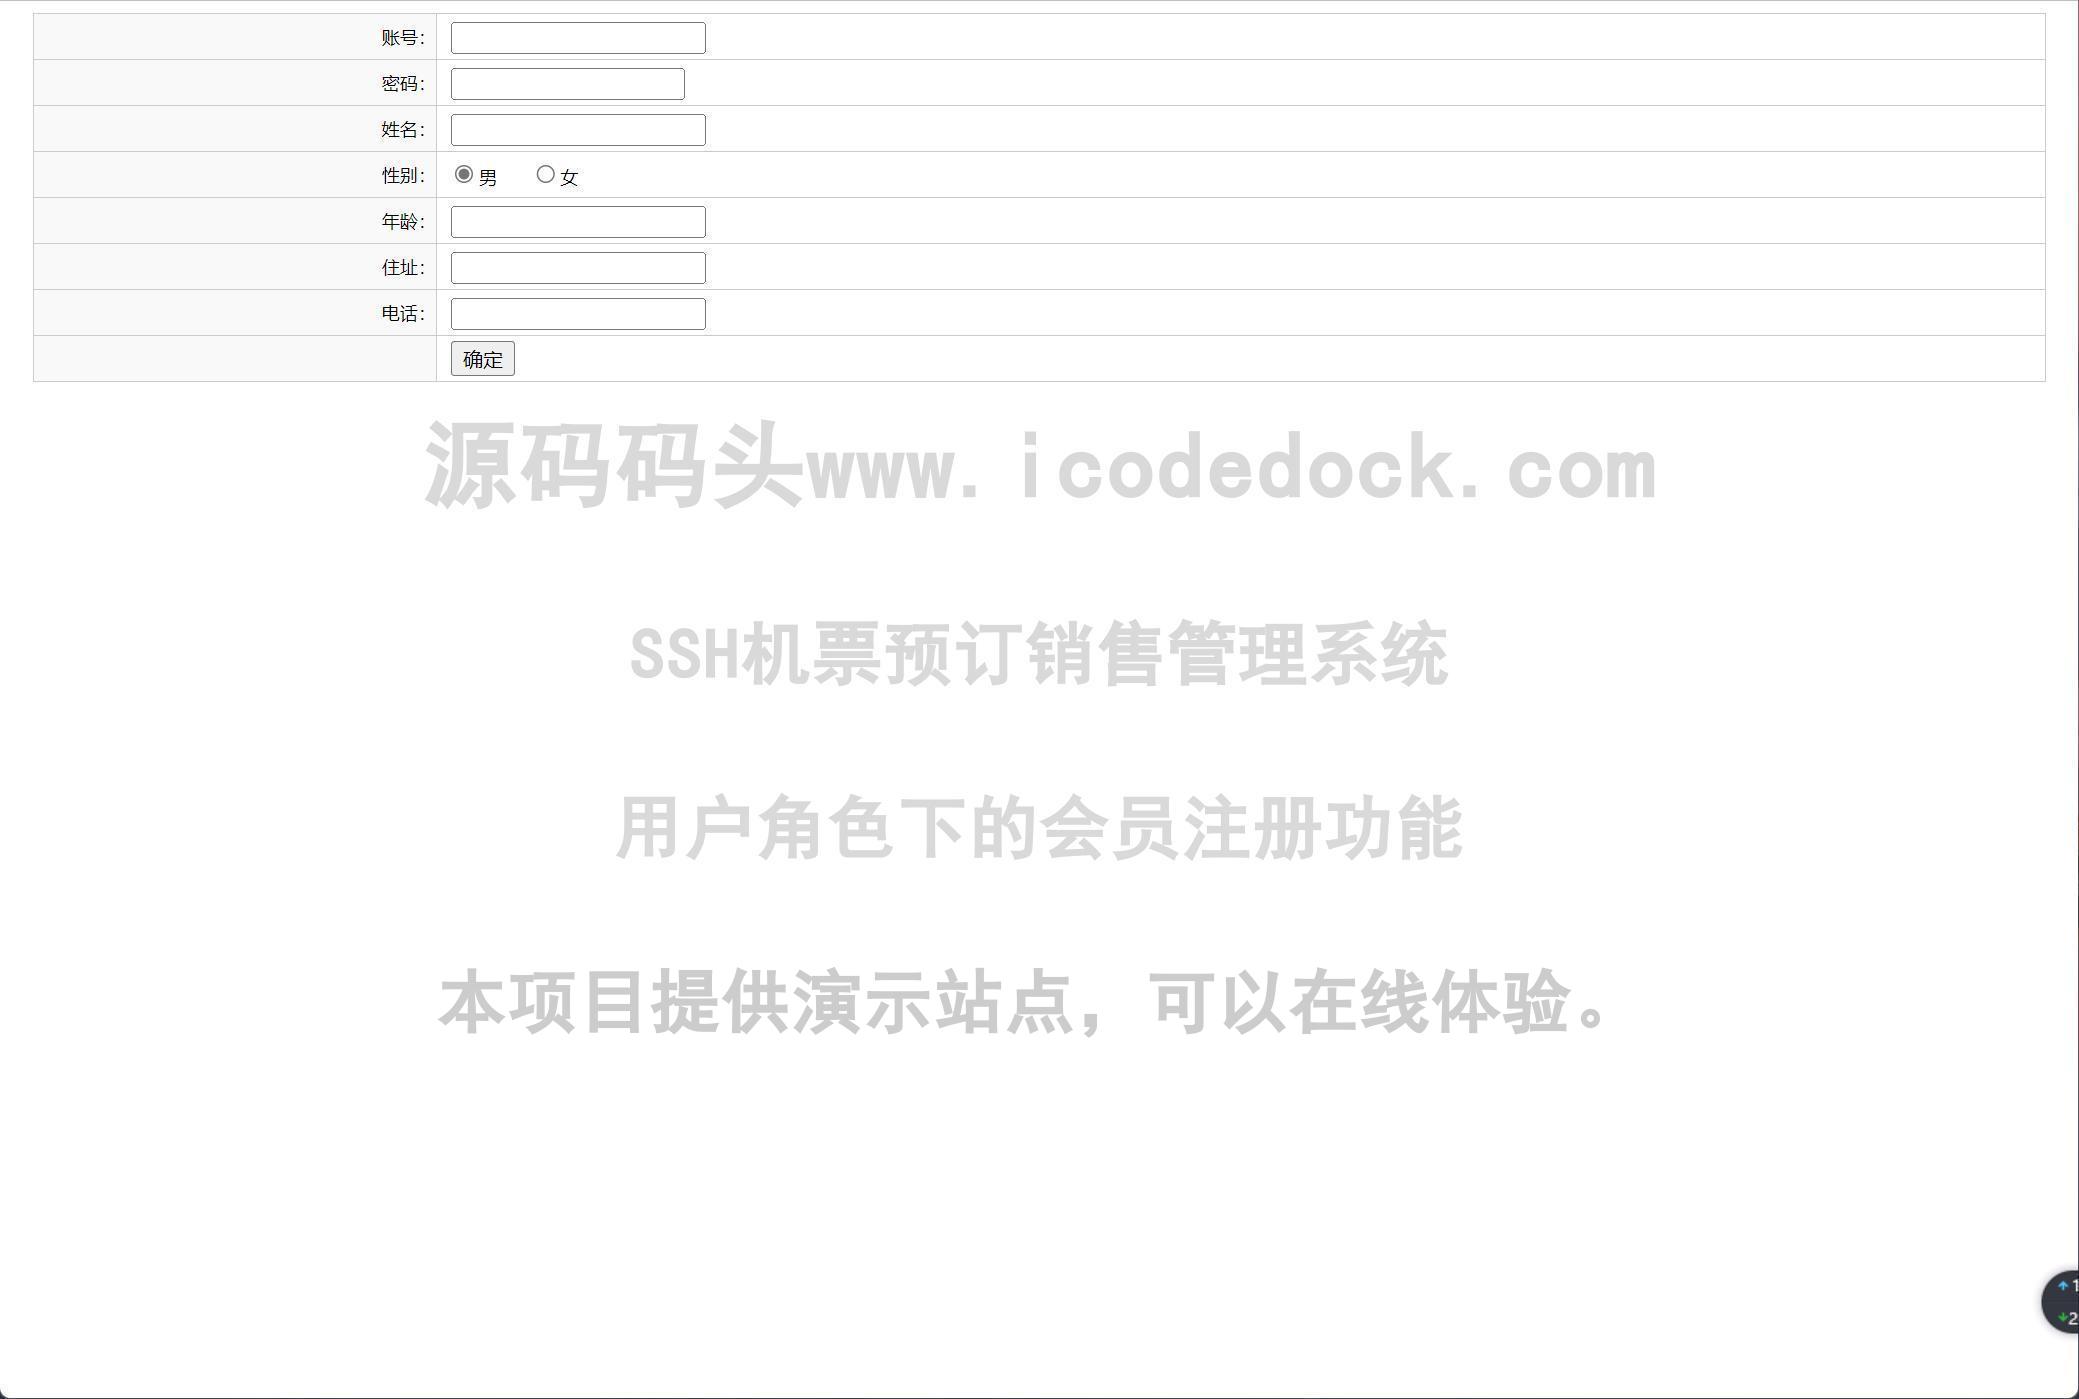 源码码头-SSH机票预订销售管理系统-用户角色-会员注册